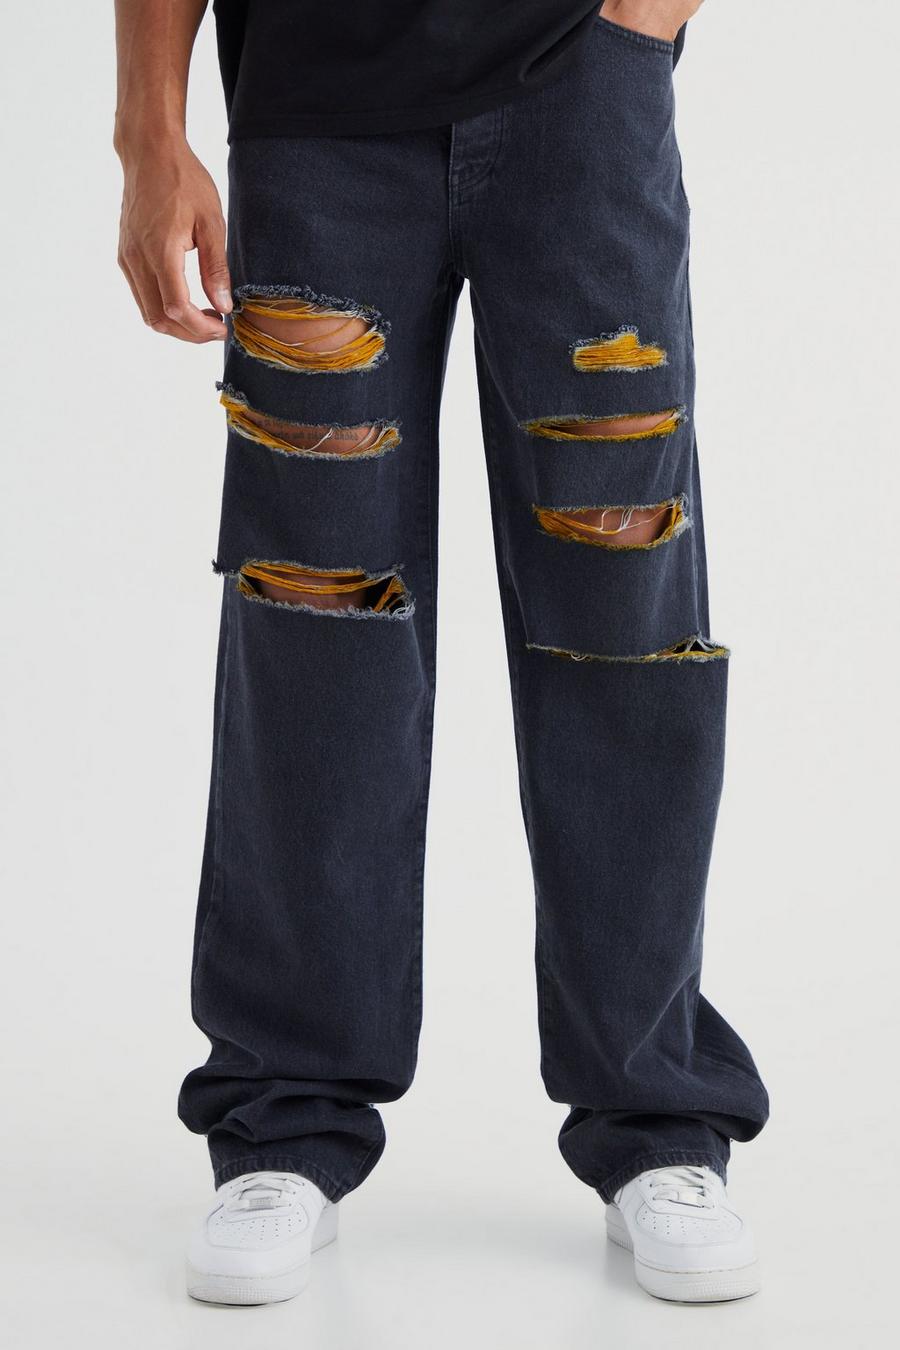 Tall lockere Kontrast-Jeans mit Rissen, Washed black